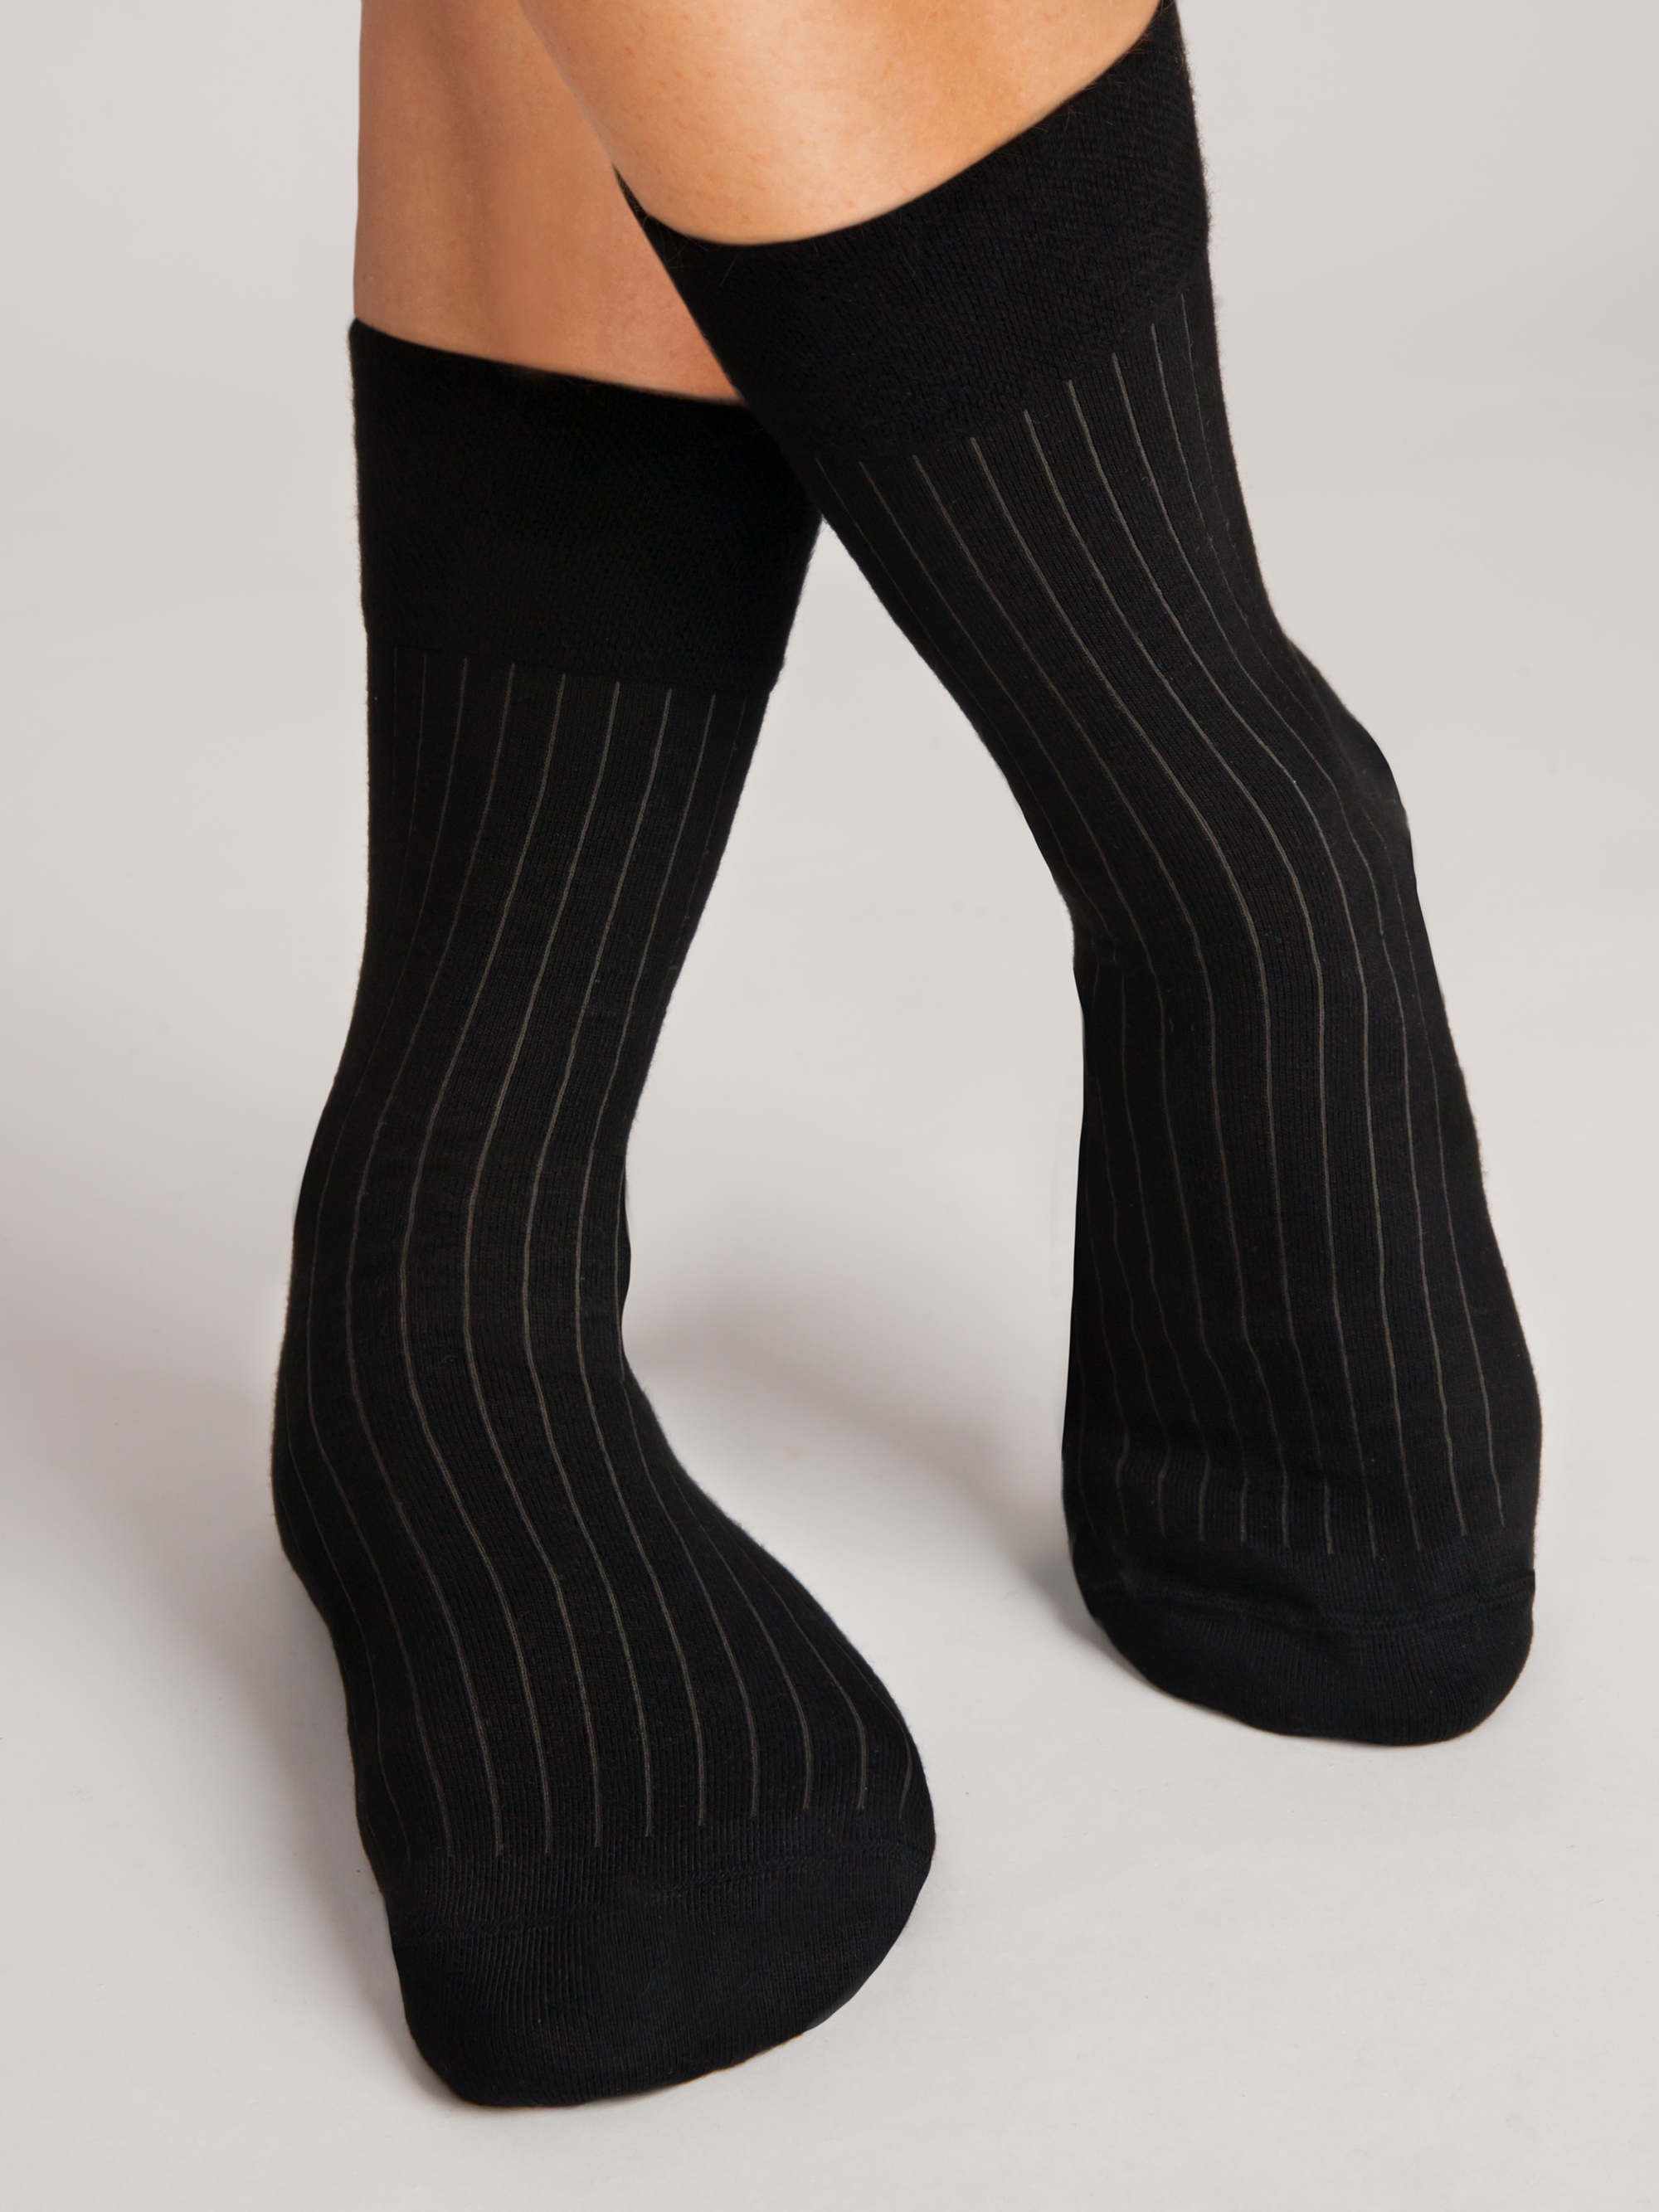 NOVITI Man's Socks SB004-M-10